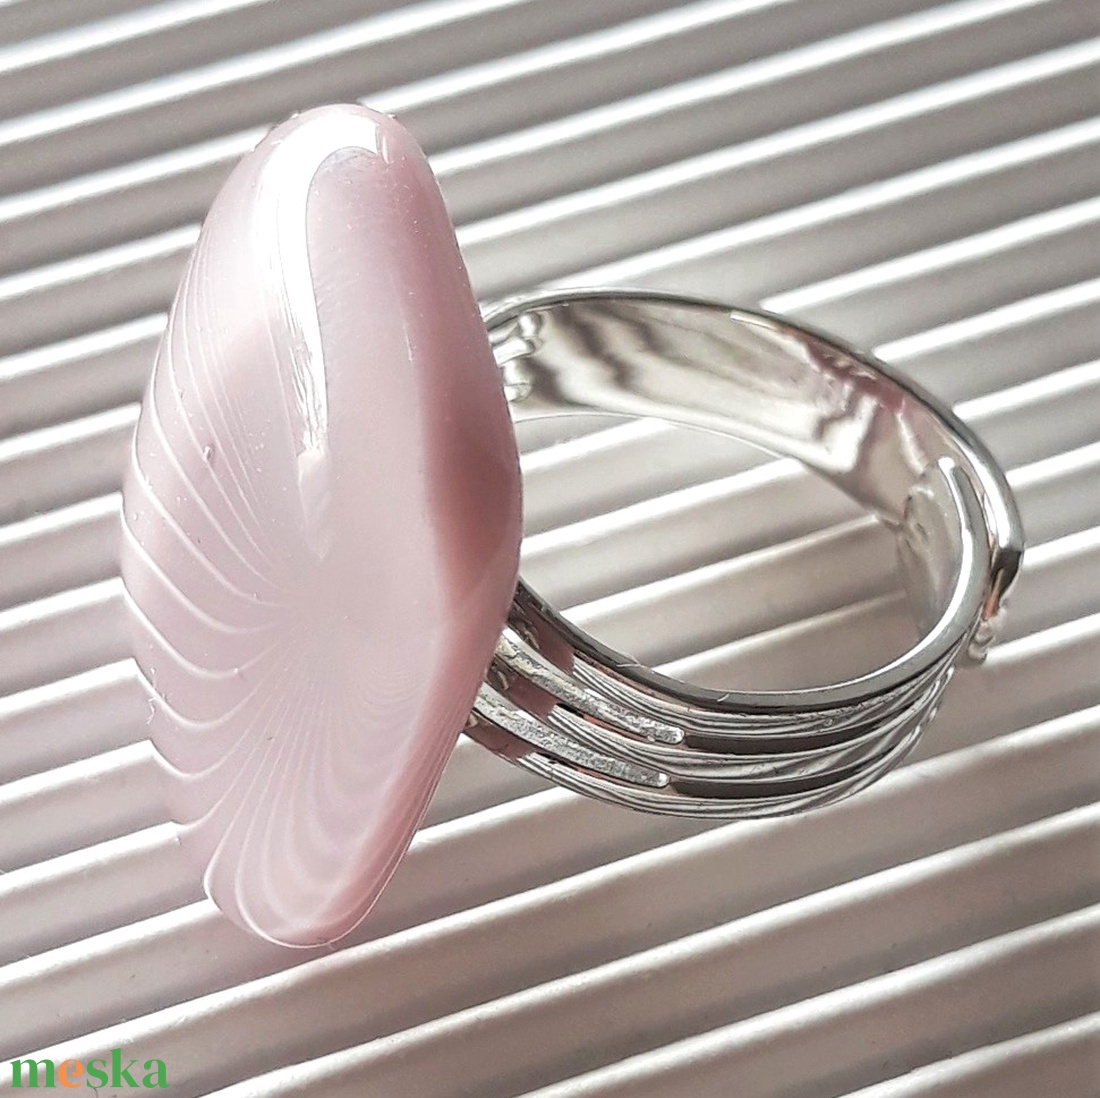 Sápadt rózsaszín üveg gyűrű, üvegékszer - ékszer - gyűrű - statement gyűrű - Meska.hu